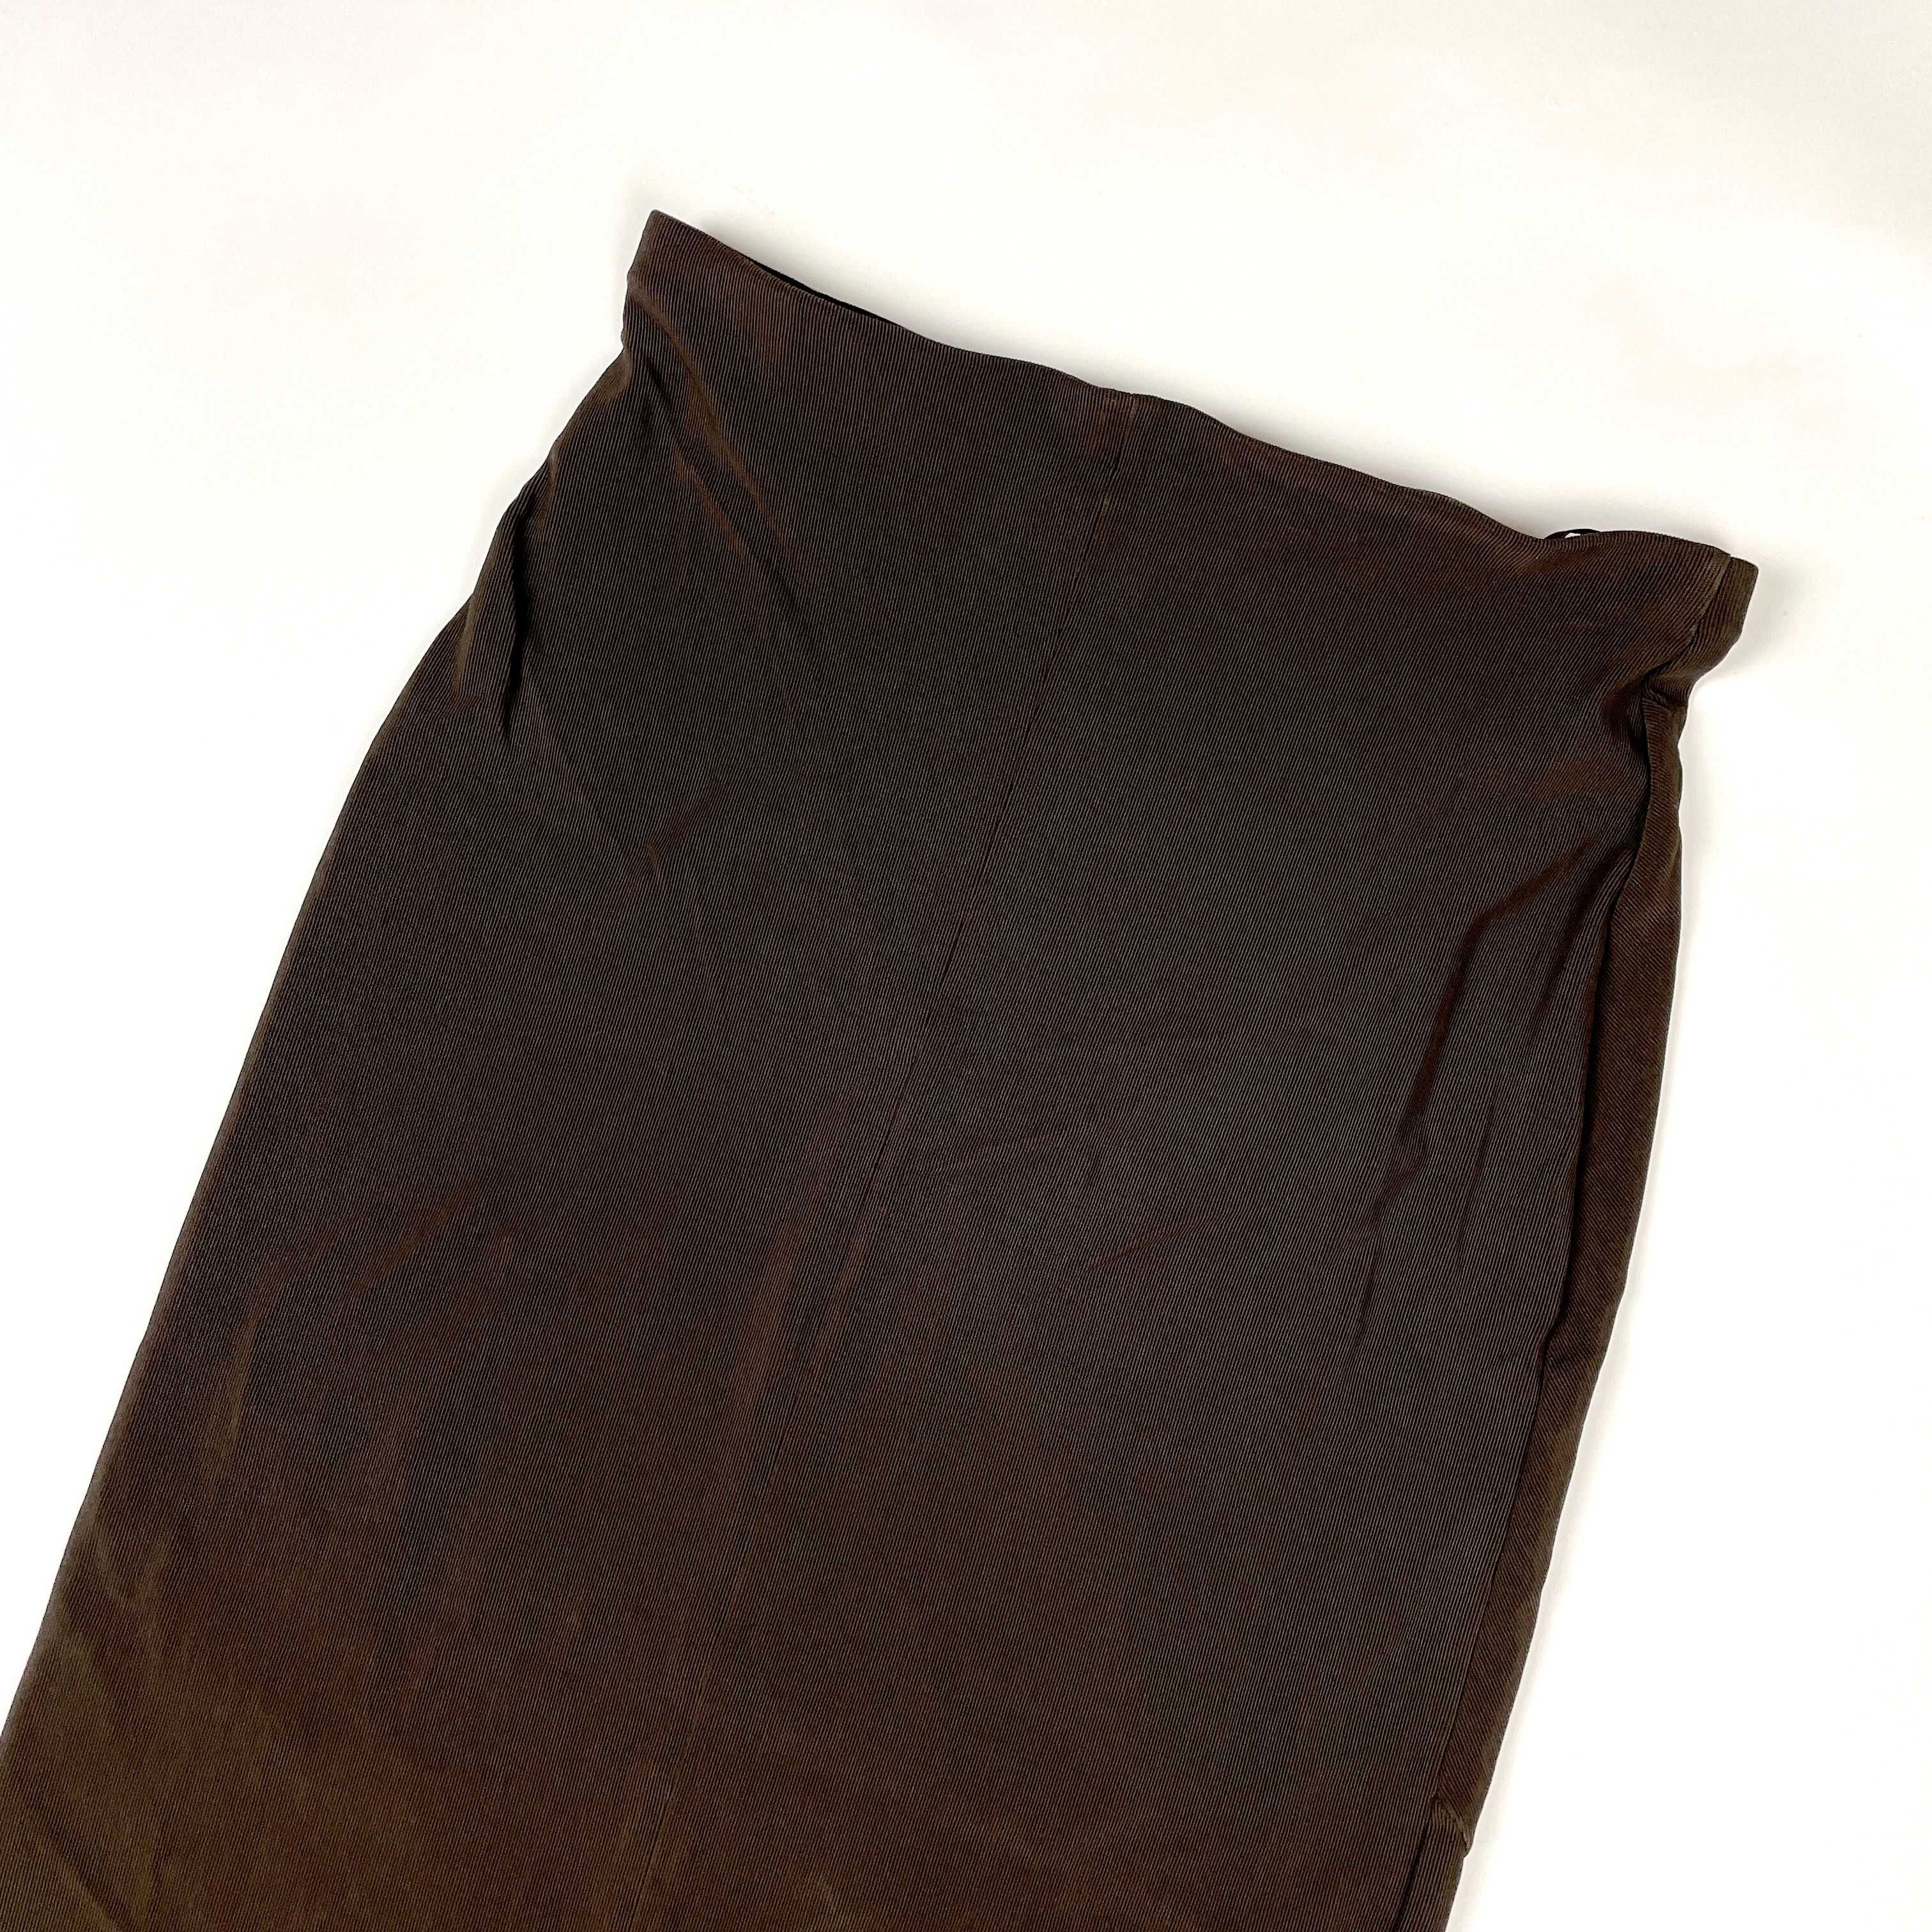 Vintage długa prosta brązowa spódnica maxi edgy y2k 90s (M/L)